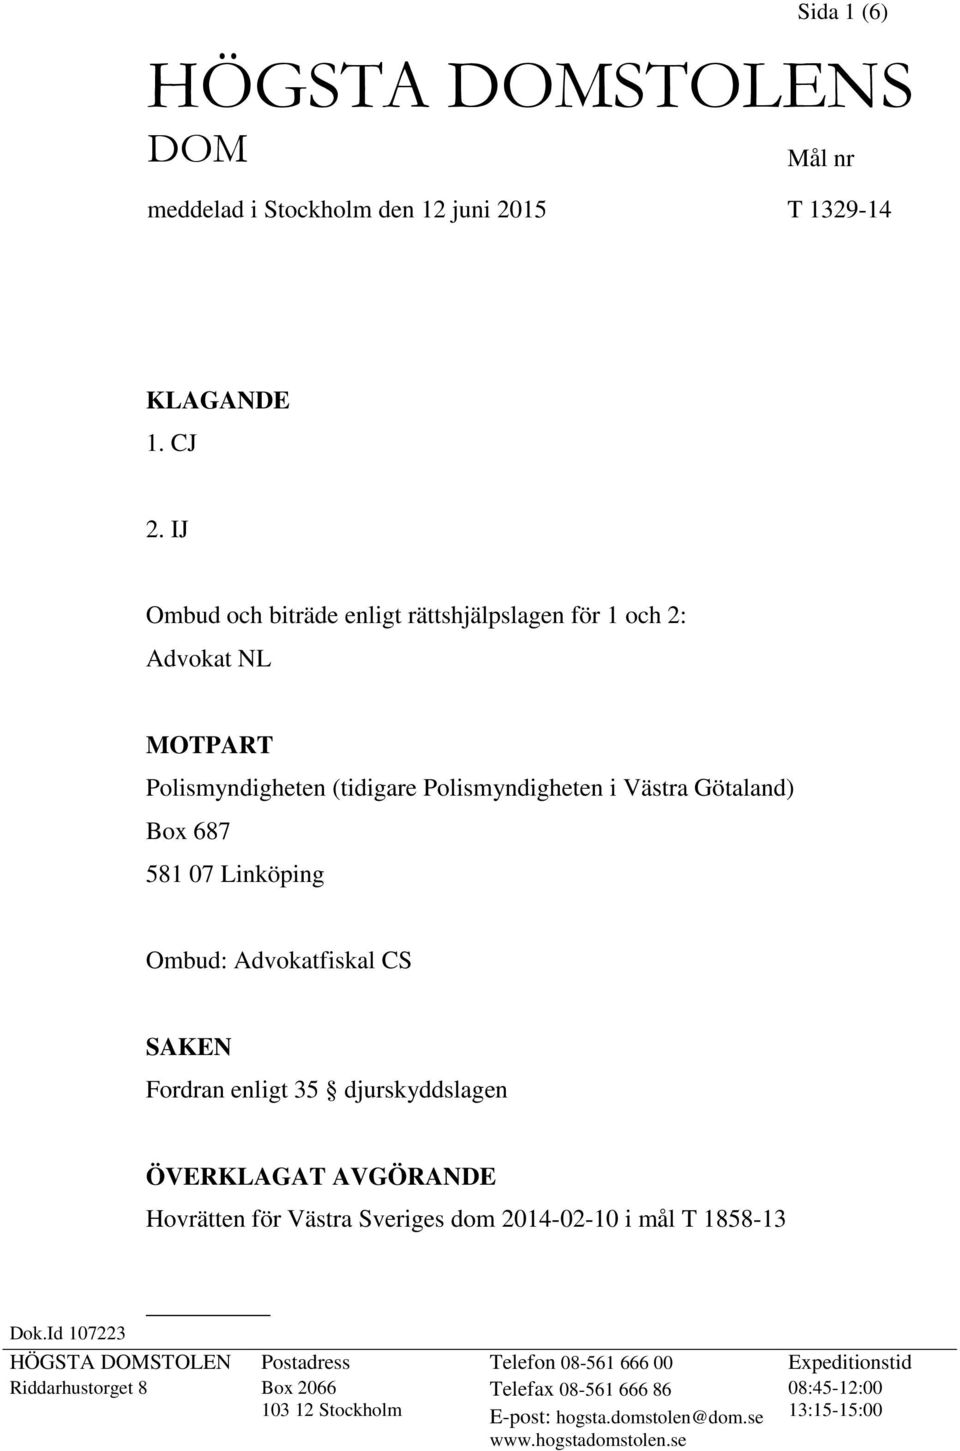 Linköping Ombud: Advokatfiskal CS SAKEN Fordran enligt 35 djurskyddslagen ÖVERKLAGAT AVGÖRANDE Hovrätten för Västra Sveriges dom 2014-02-10 i mål T 1858-13 Dok.